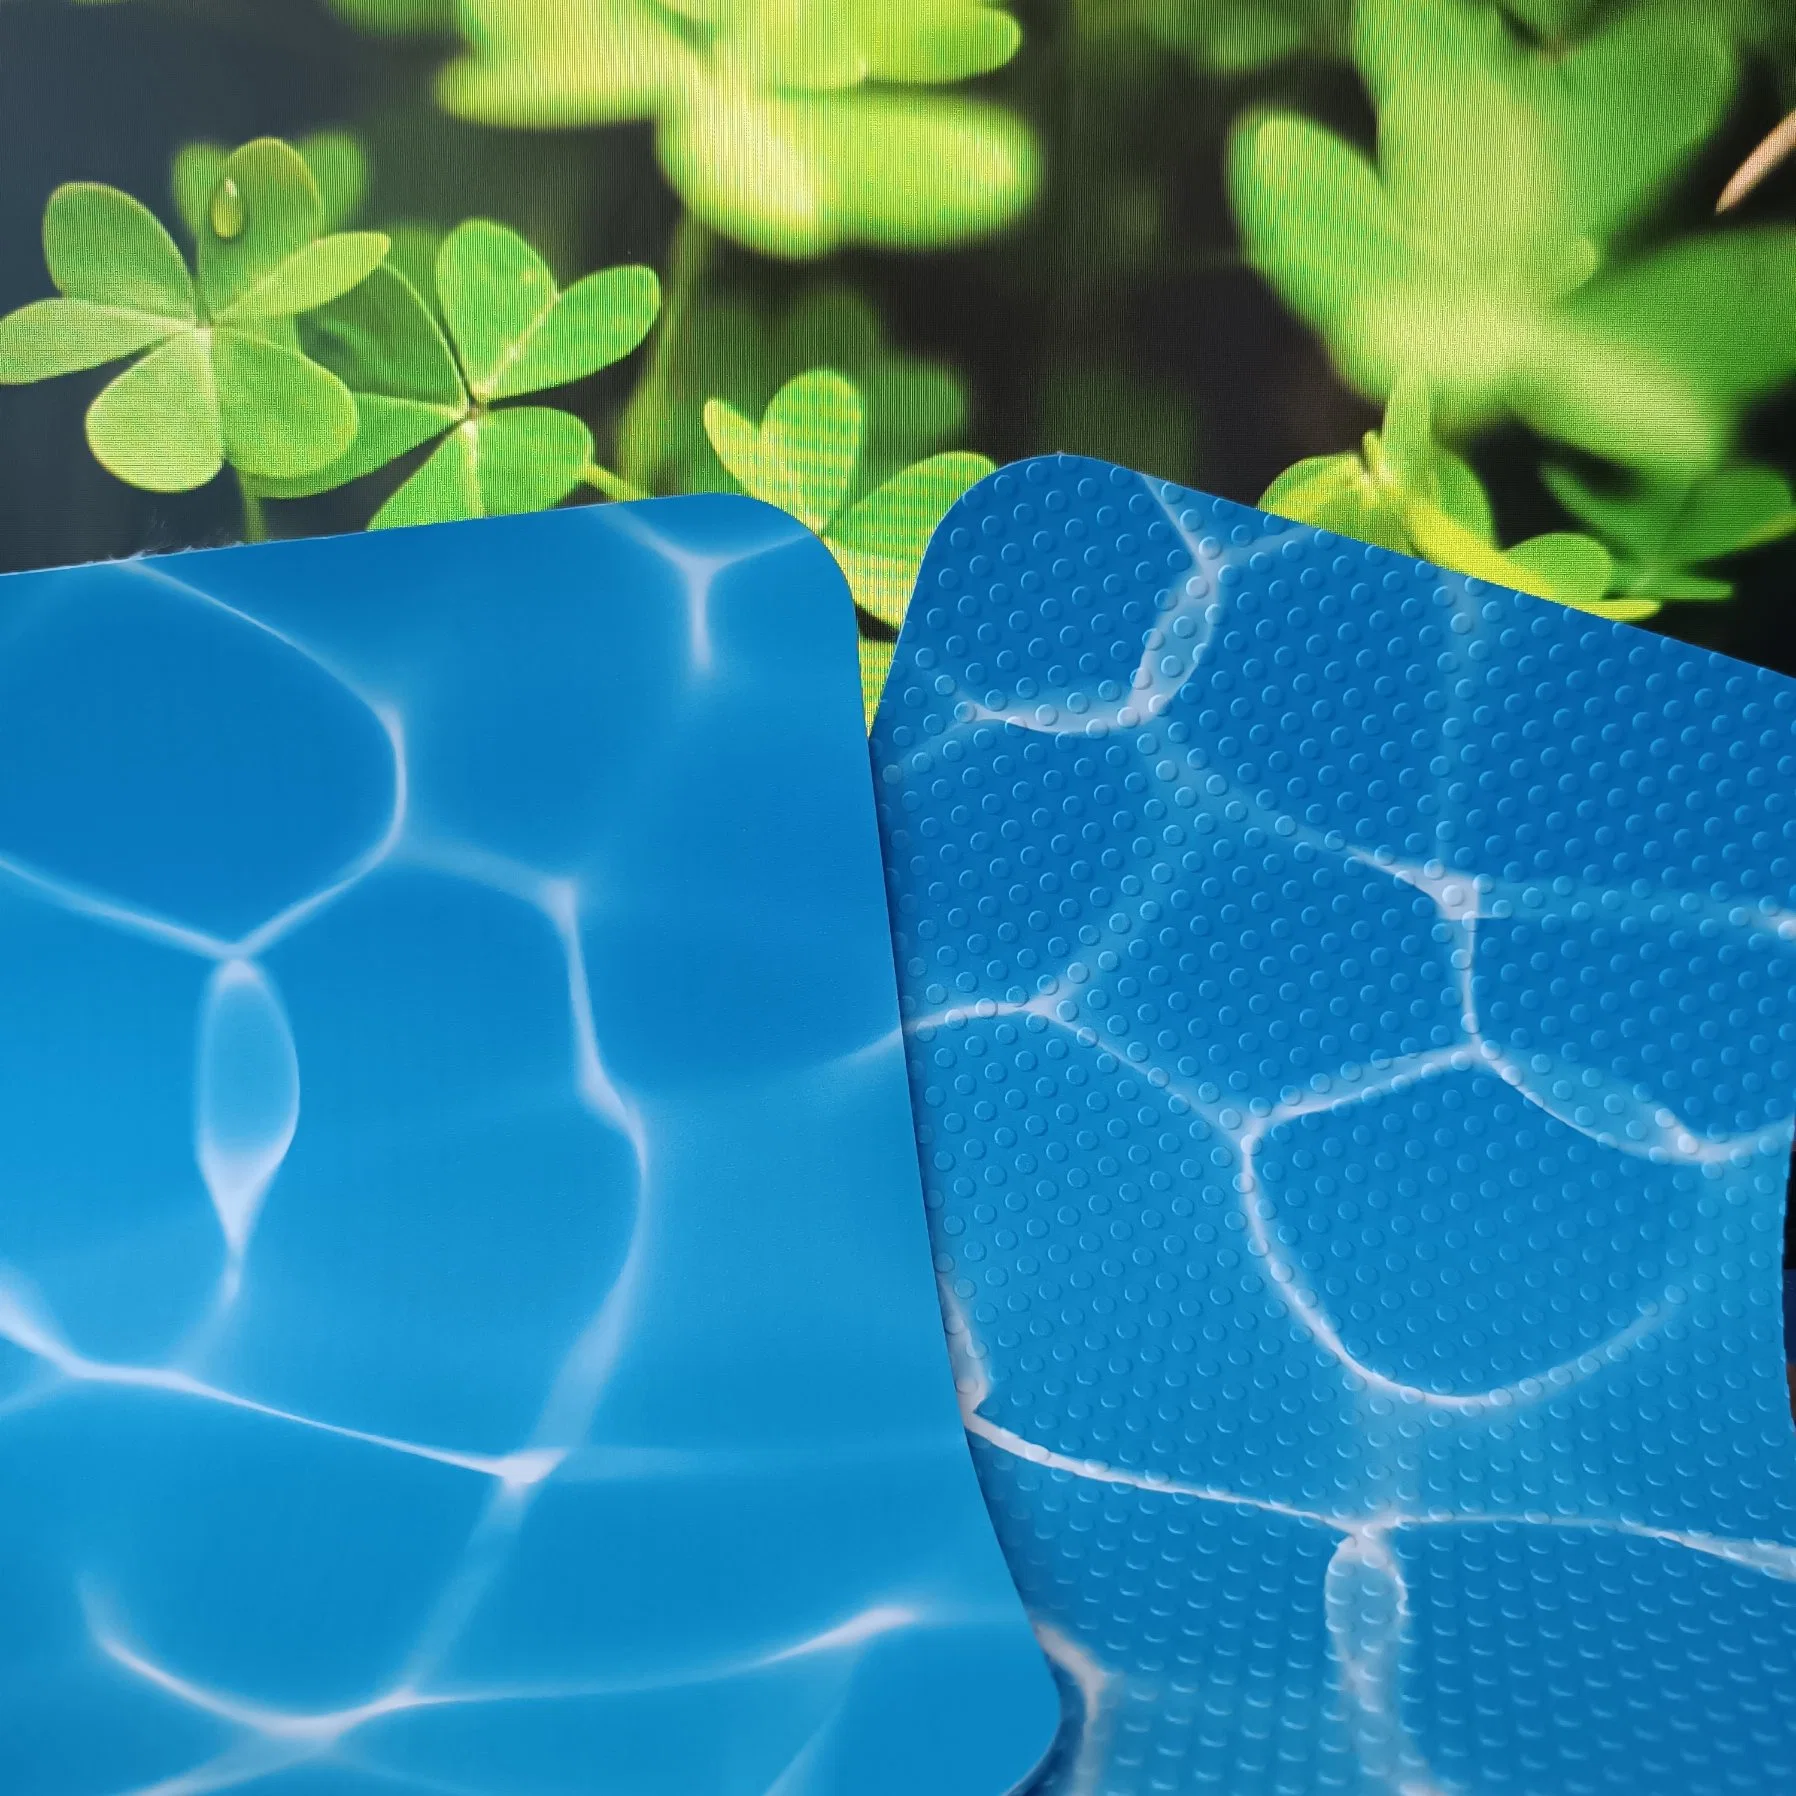 Membrana de plástico impermeável revestimento para piscinas em PVC azul antiderrapante Ótimo para piscinas Inground